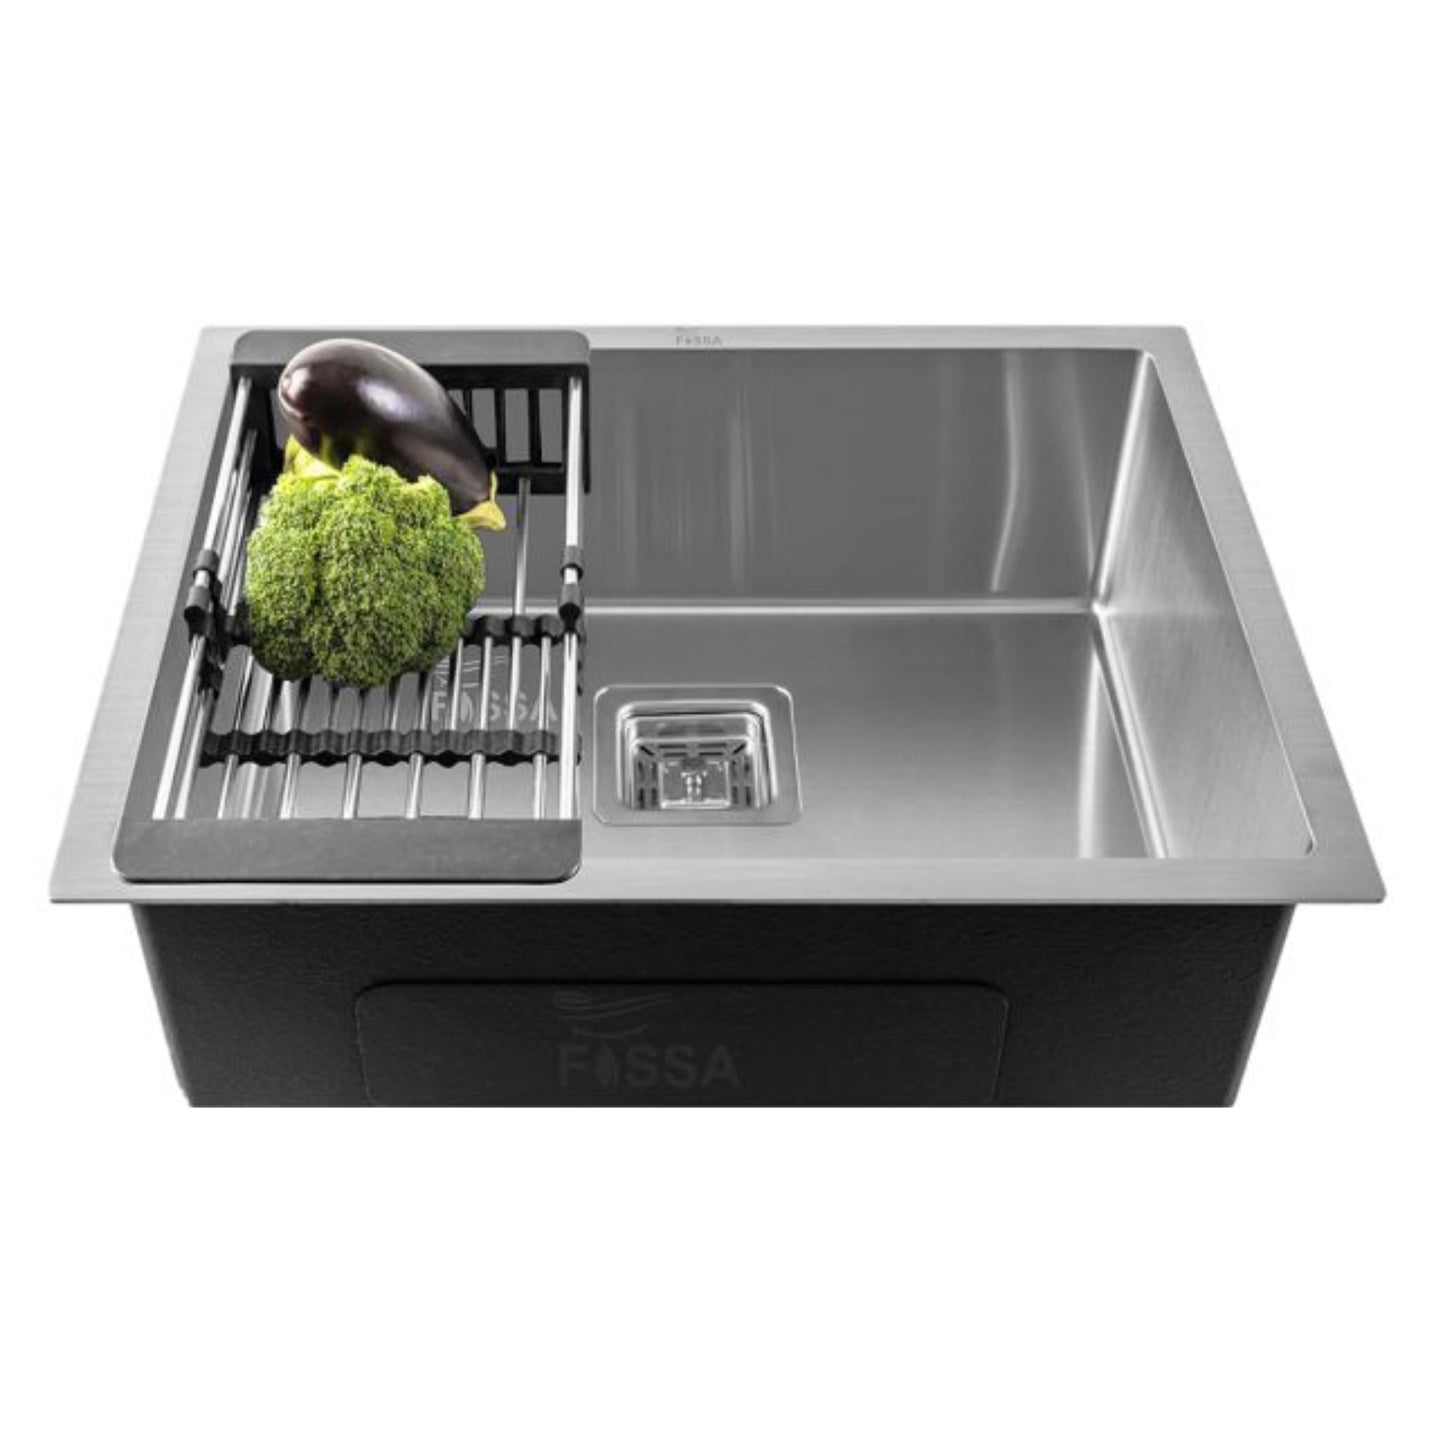 Fossa 21"x18"x09" inch Single Bowl Premium Stainless Steel Handmade Kitchen Sink Silver